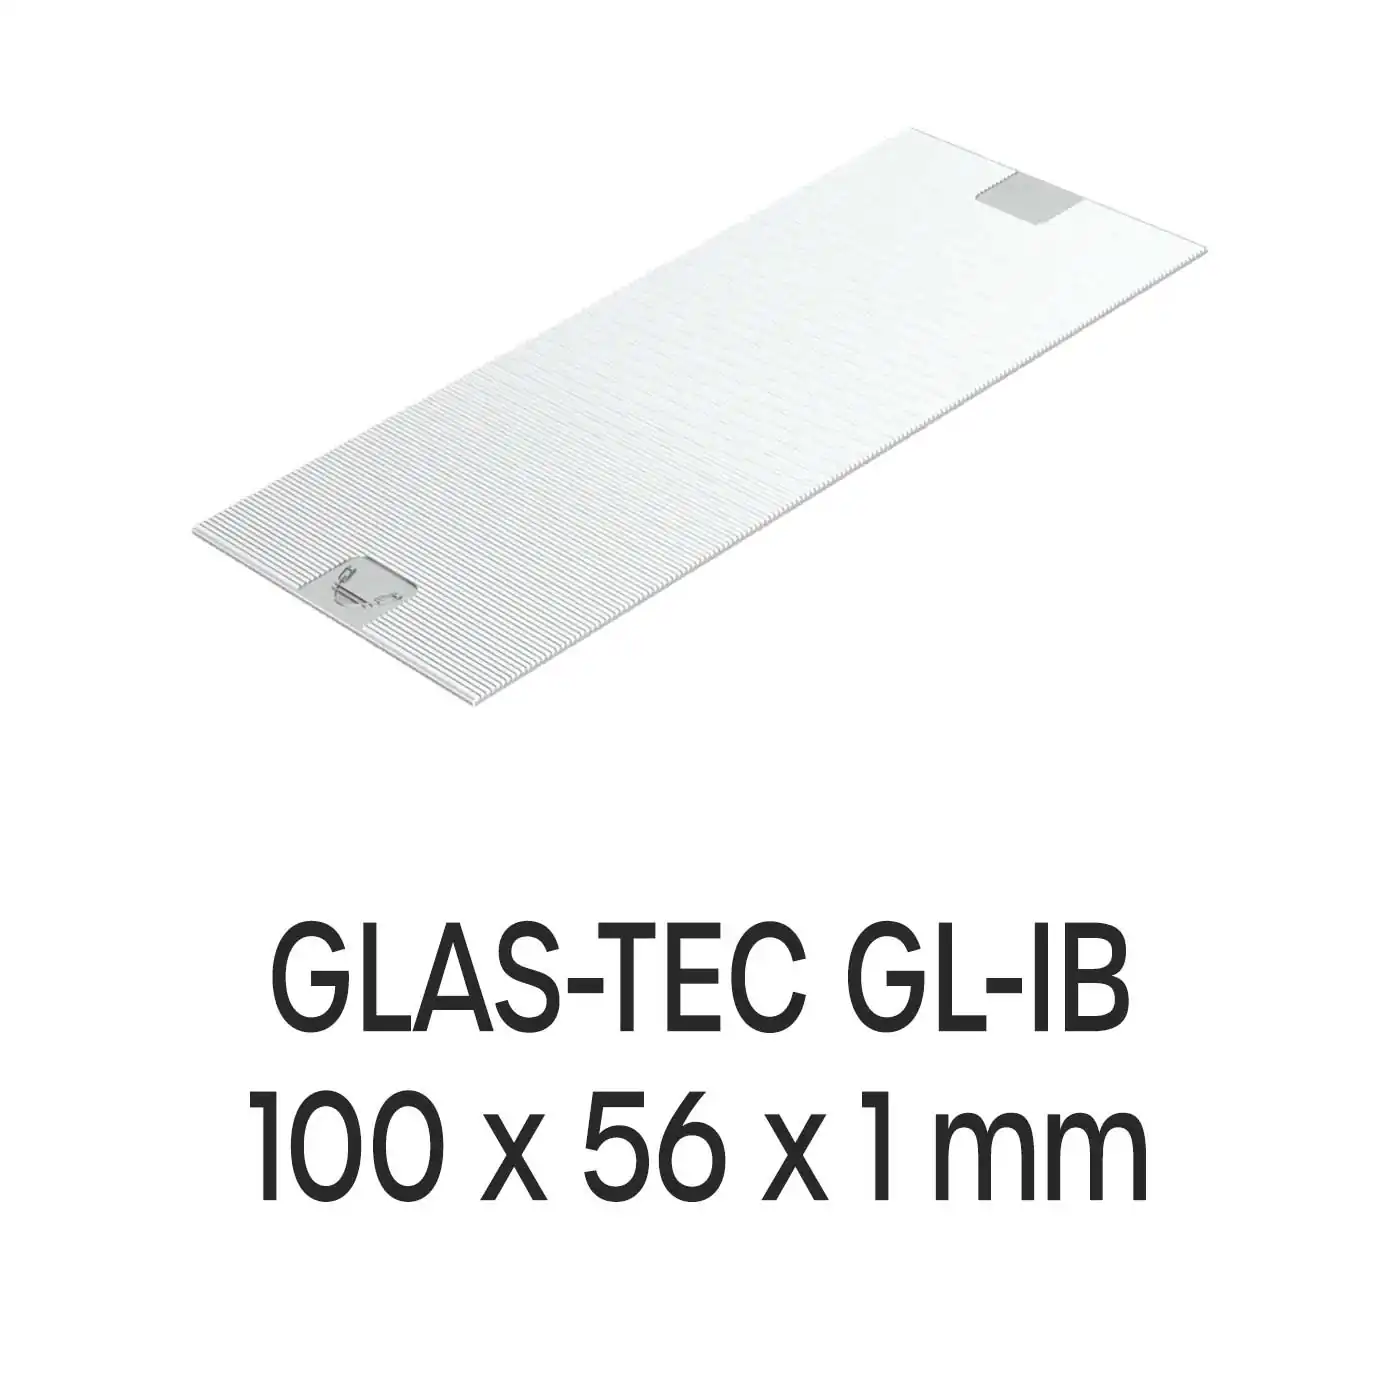 Roto Verglasungsklotz GLAS-TEC GL-IB, 100 x 56 x 1 mm, schwarz, 500 Stück